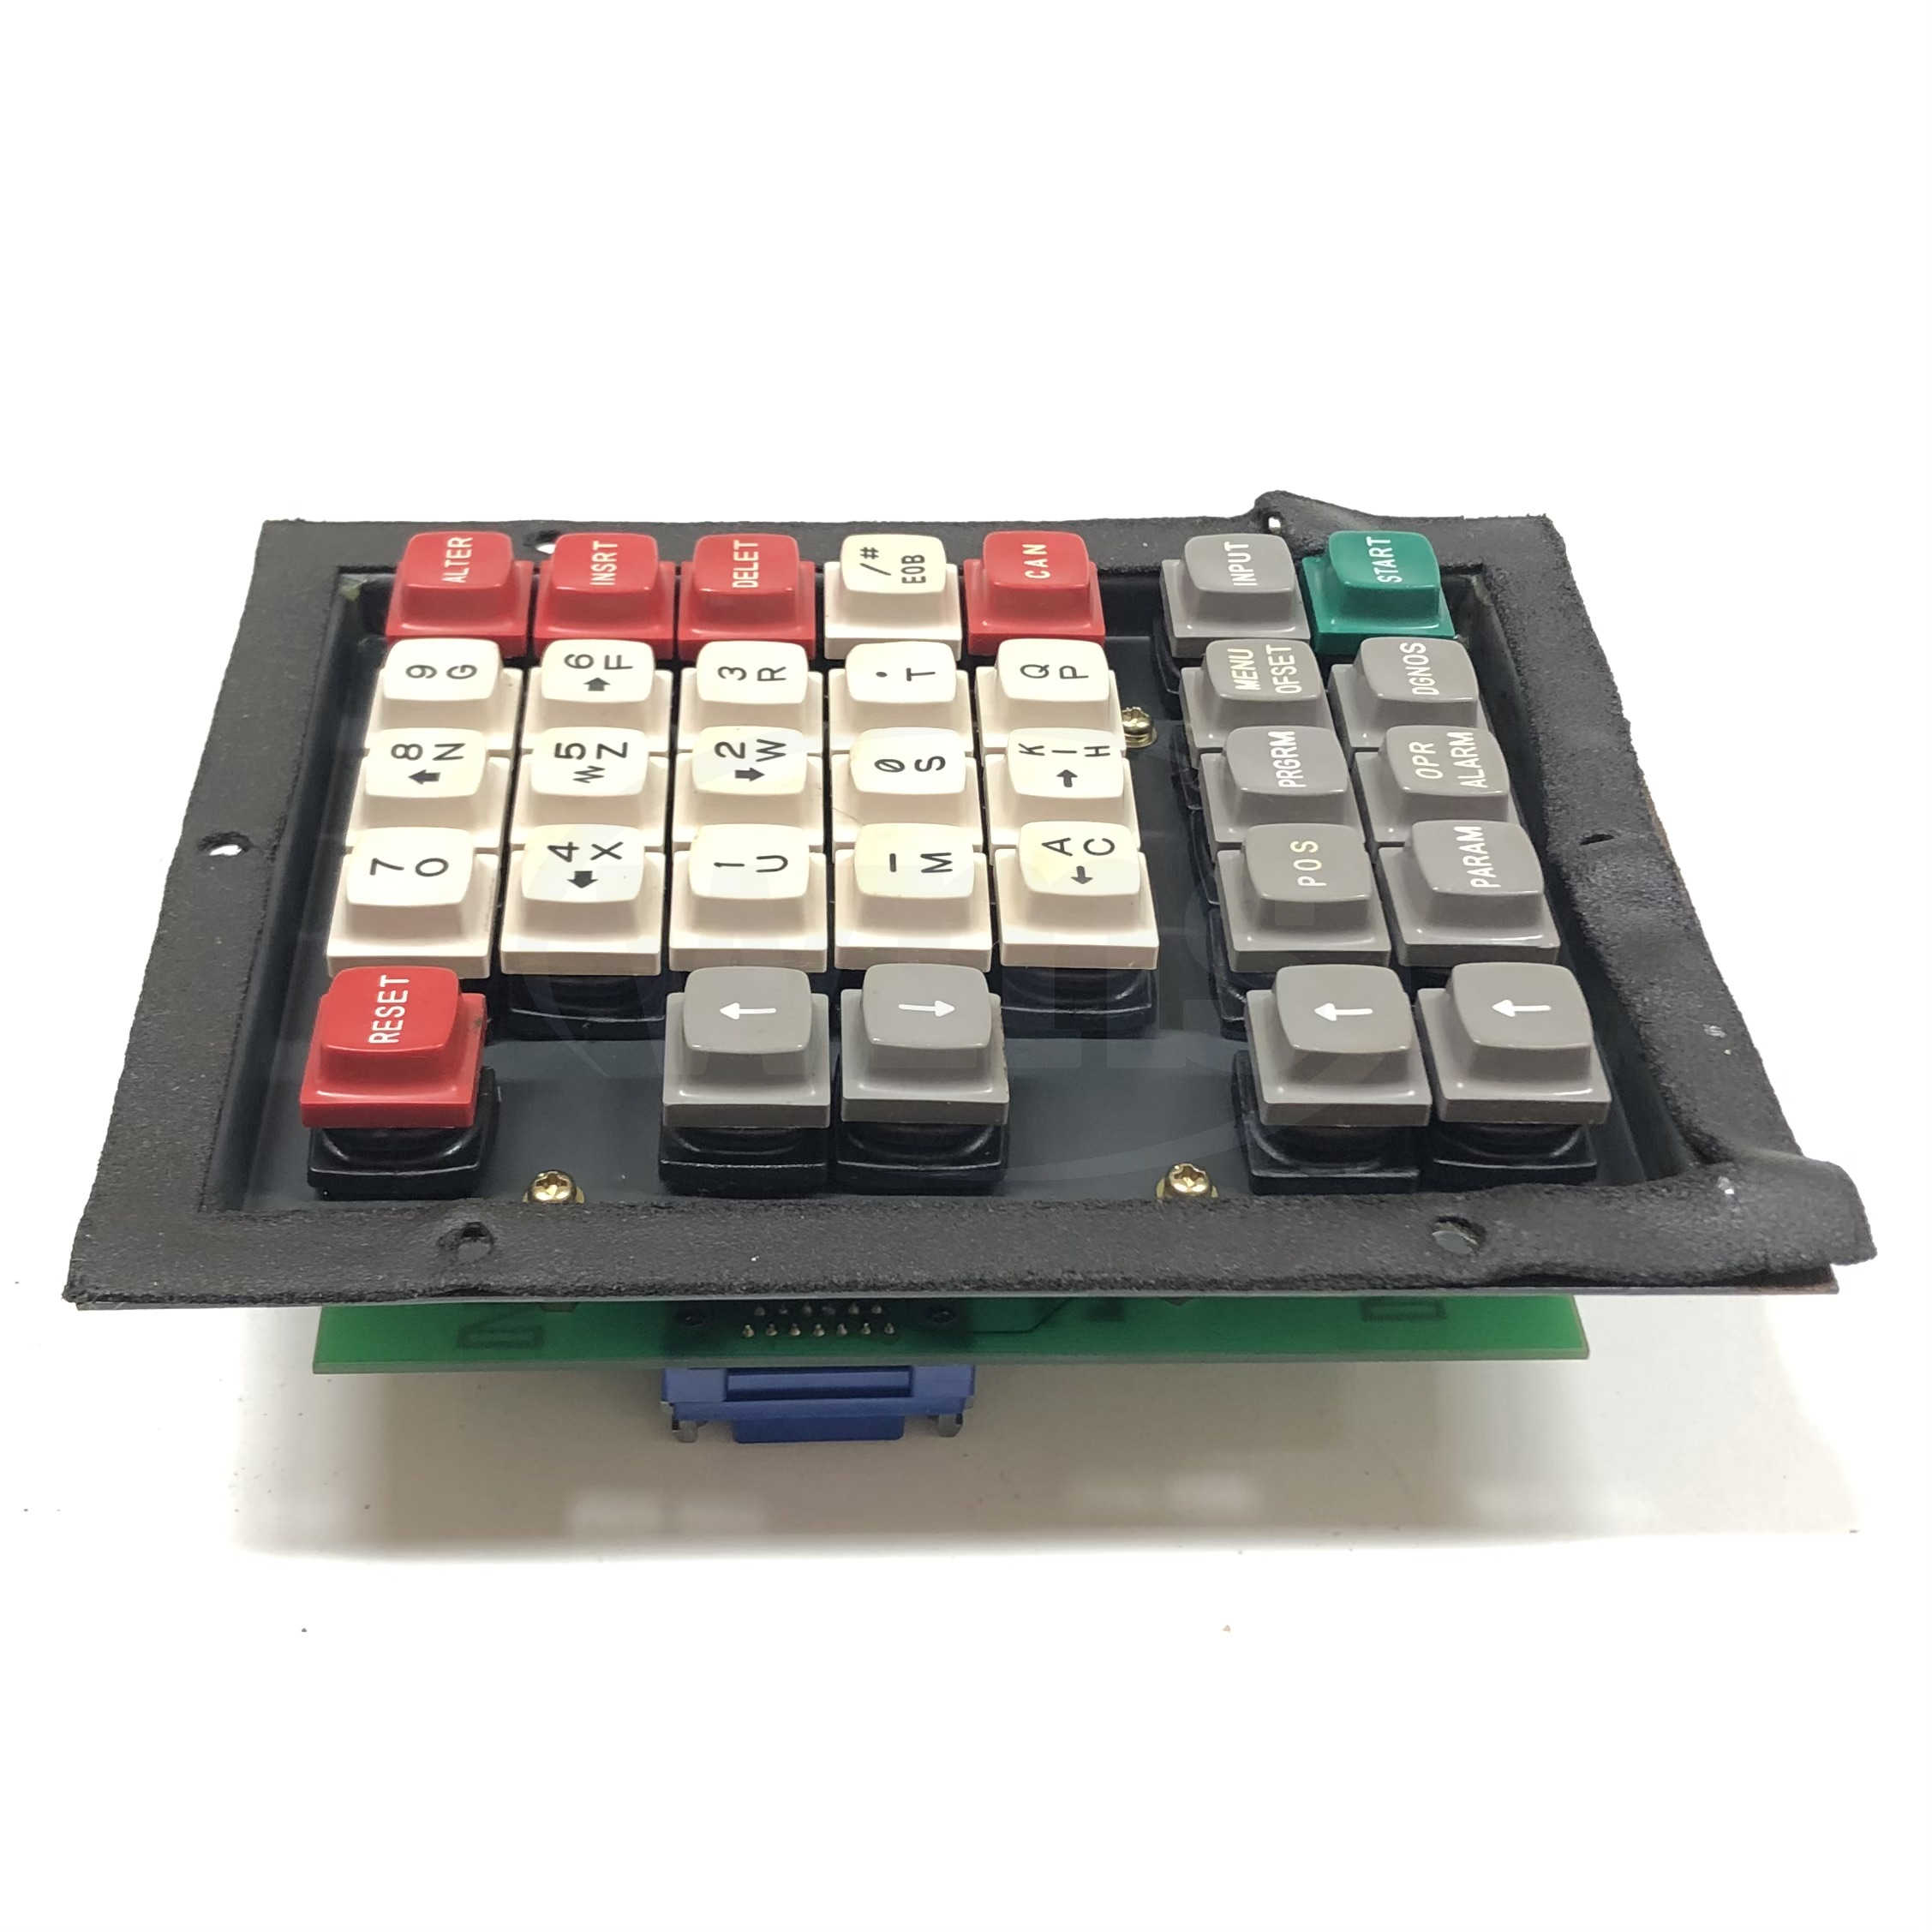 A16B-1600-0042 Fanuc Keyboard 4